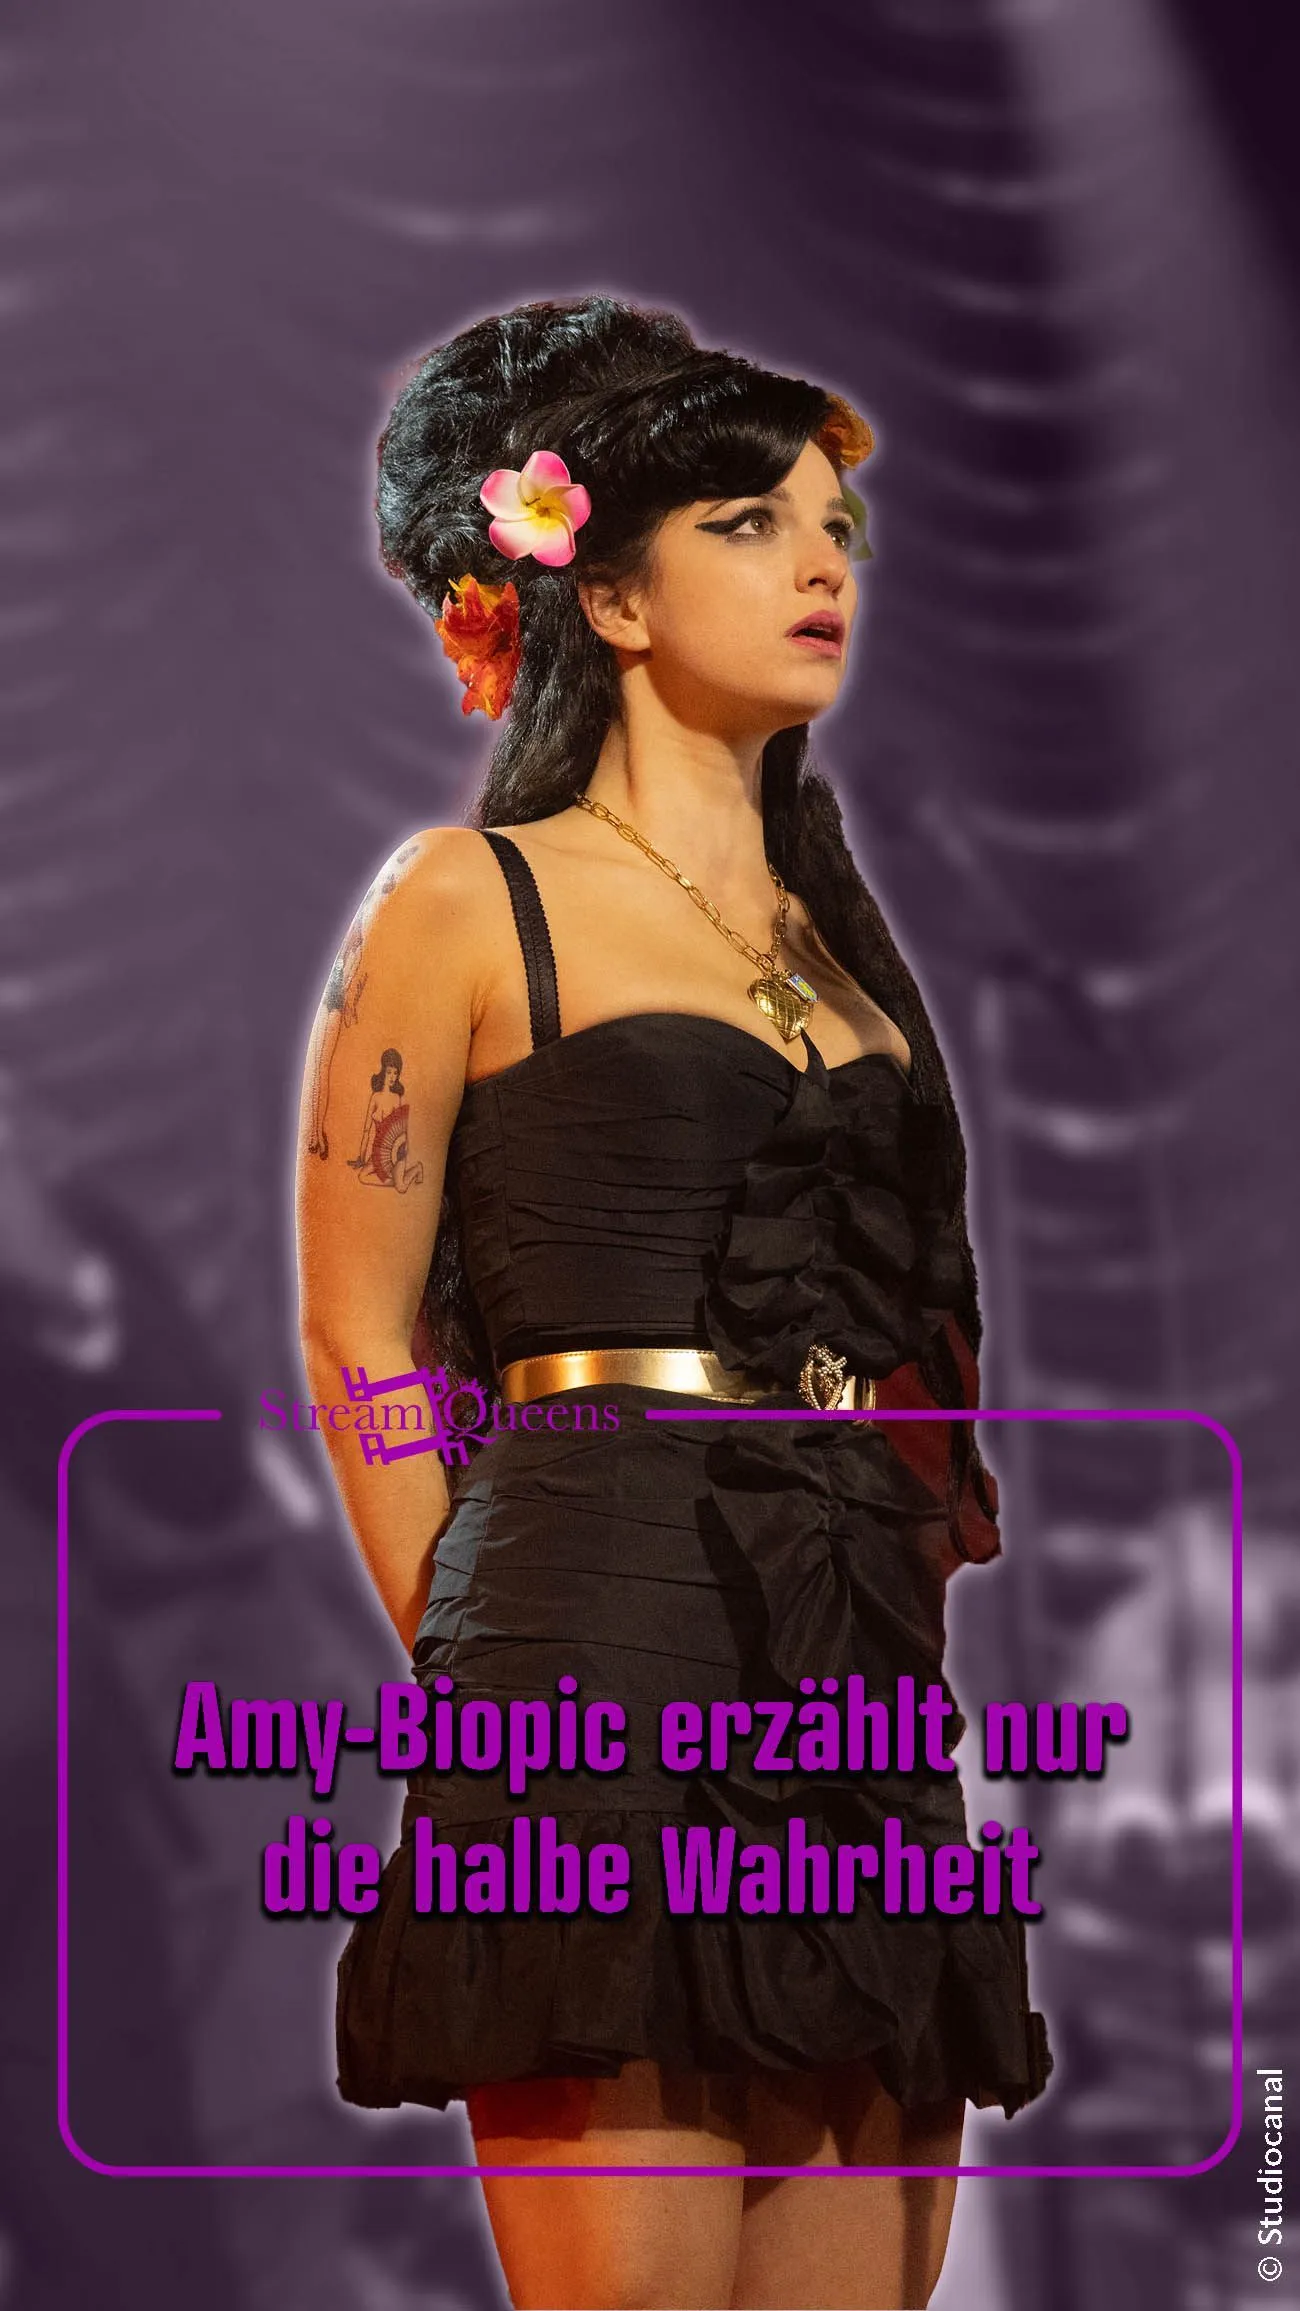 Torna al Nero: Il biopic su Amy Winehouse dice davvero la verità?